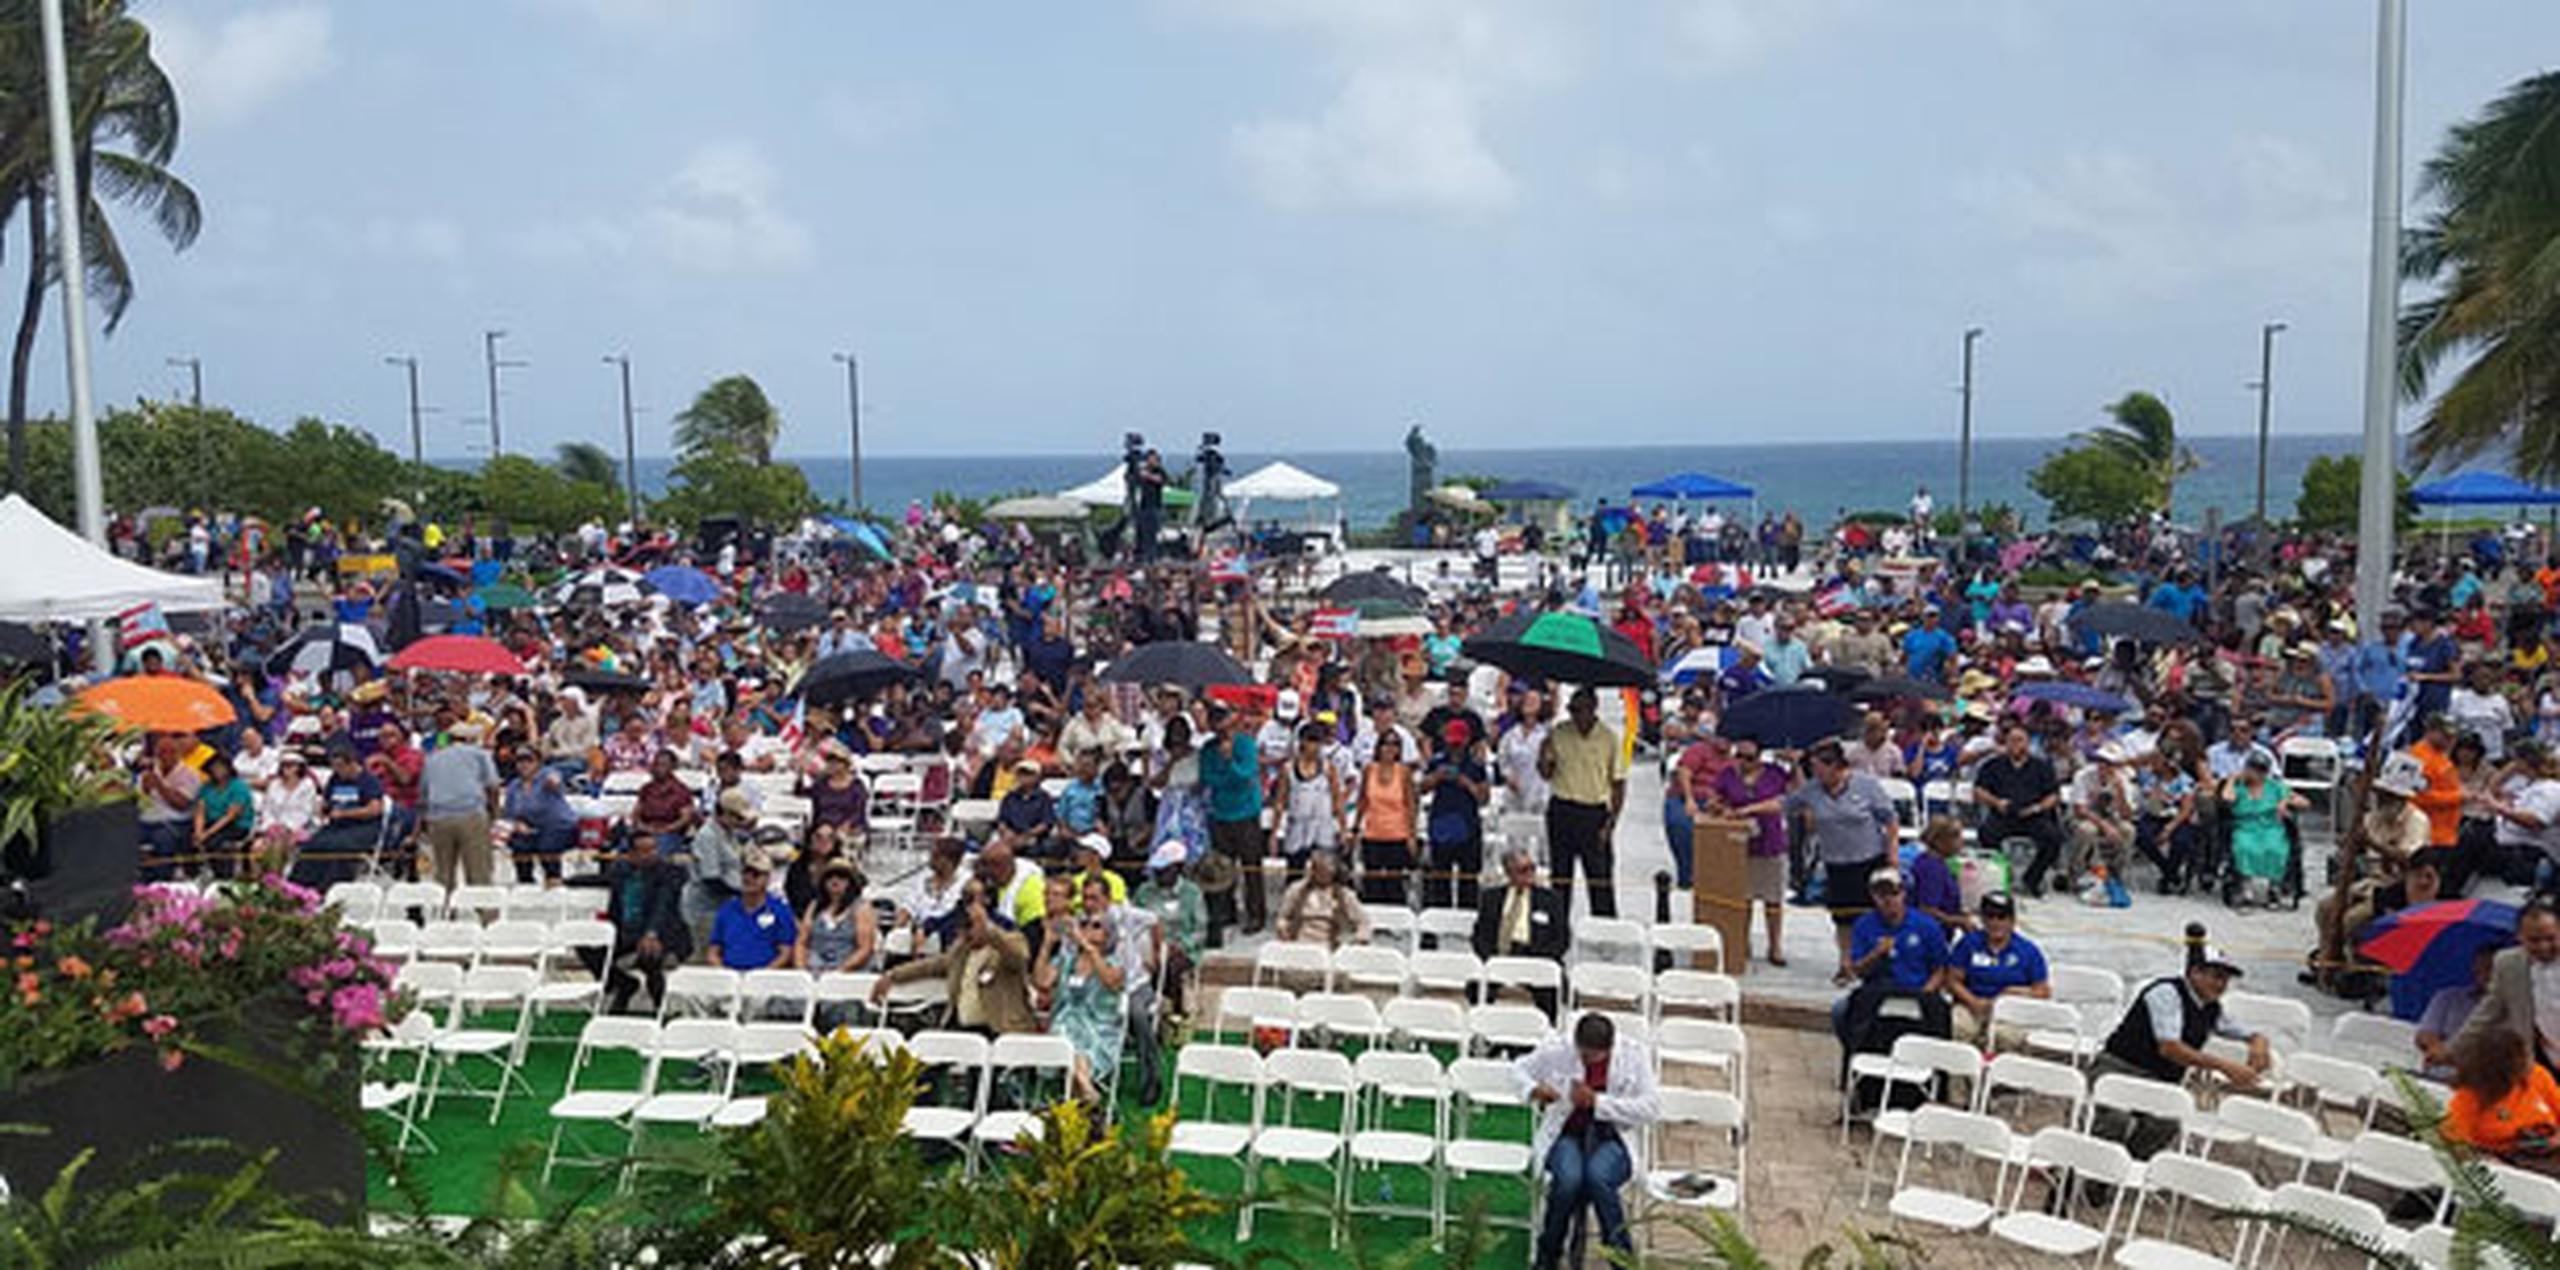 Esta es la 43ra. edición de Clamor a Dios, evento que reúne a la mayoría de las iglesias evangélicas de la Isla. (alejandra.jover@gfrmedia.com)